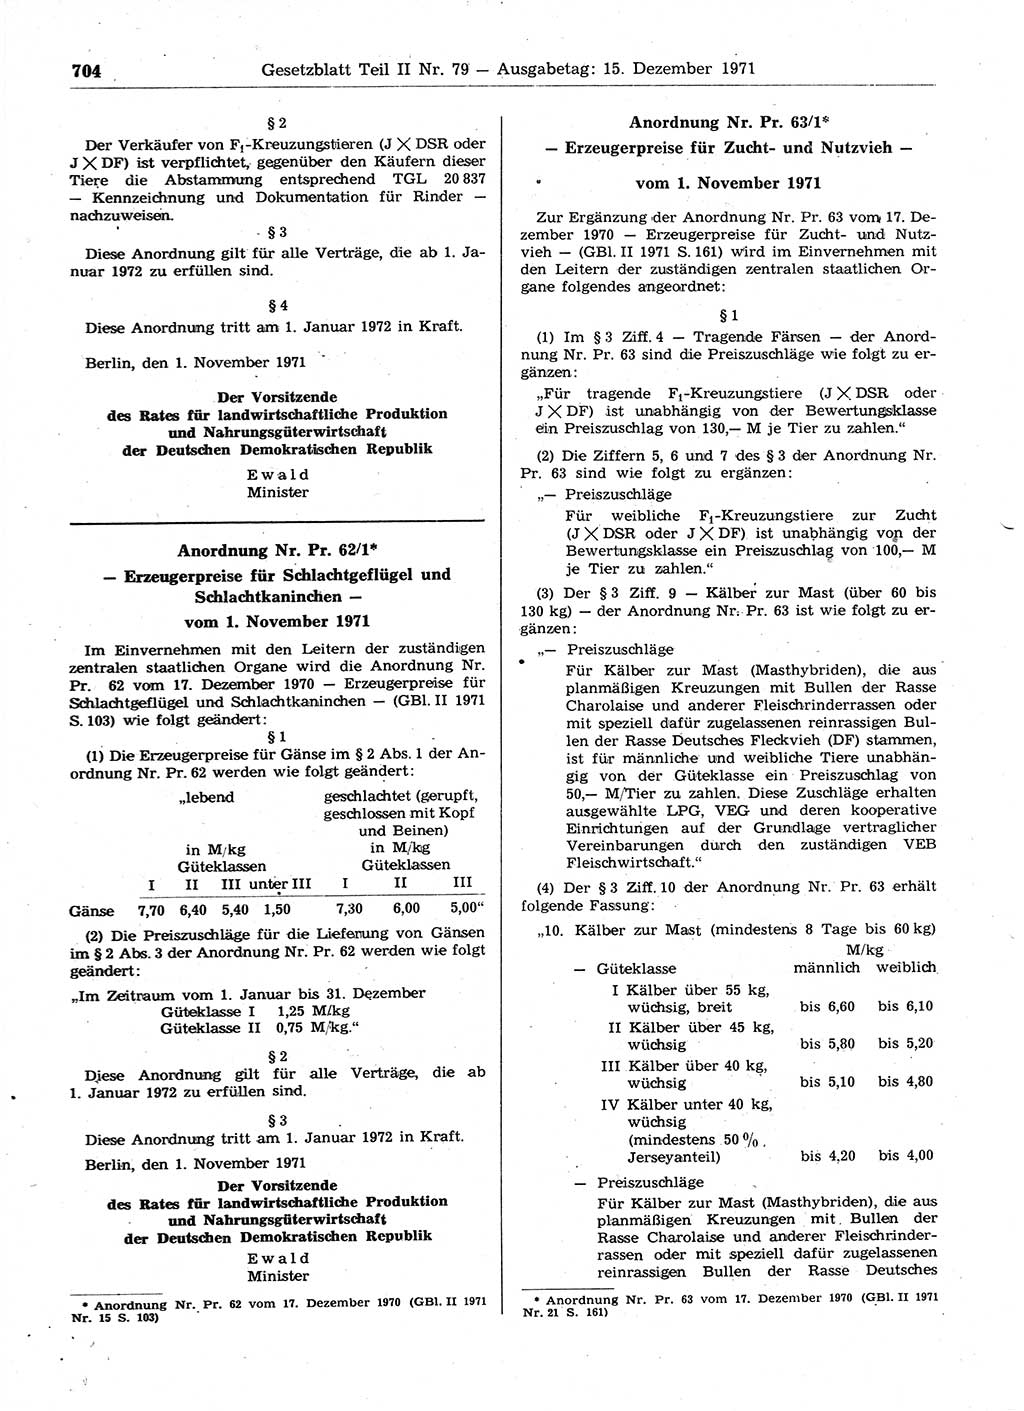 Gesetzblatt (GBl.) der Deutschen Demokratischen Republik (DDR) Teil ⅠⅠ 1971, Seite 704 (GBl. DDR ⅠⅠ 1971, S. 704)